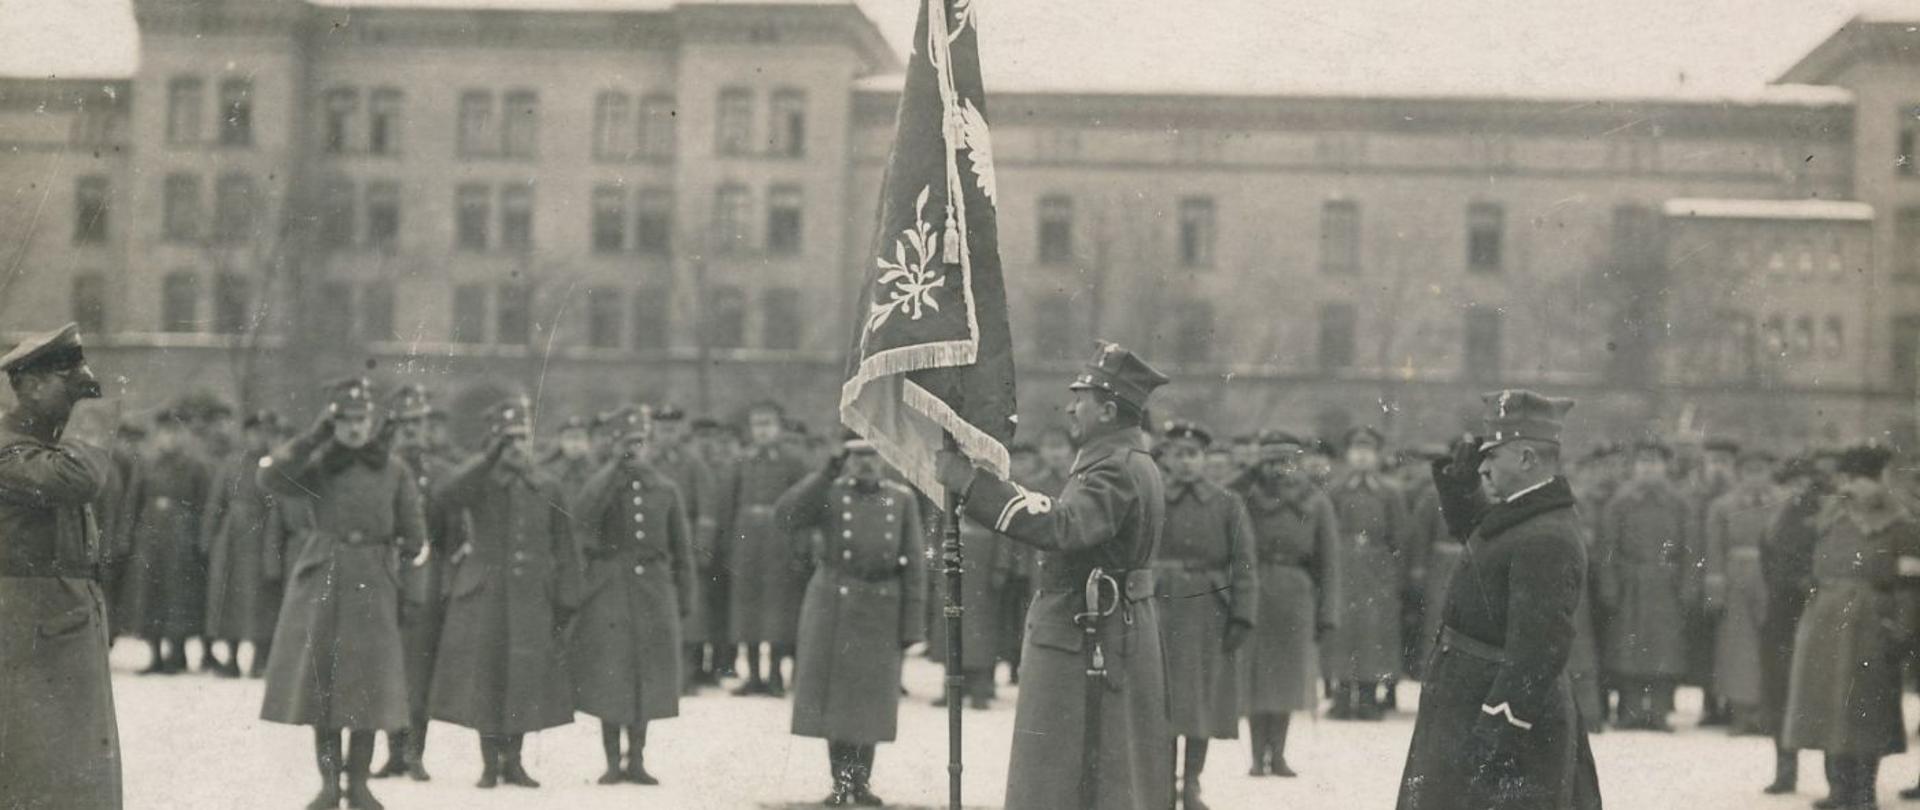 Generał Józef Dowbór-Muśnicki wręcza sztandar 1 Pułkowi Strzelców Wielkopolskich